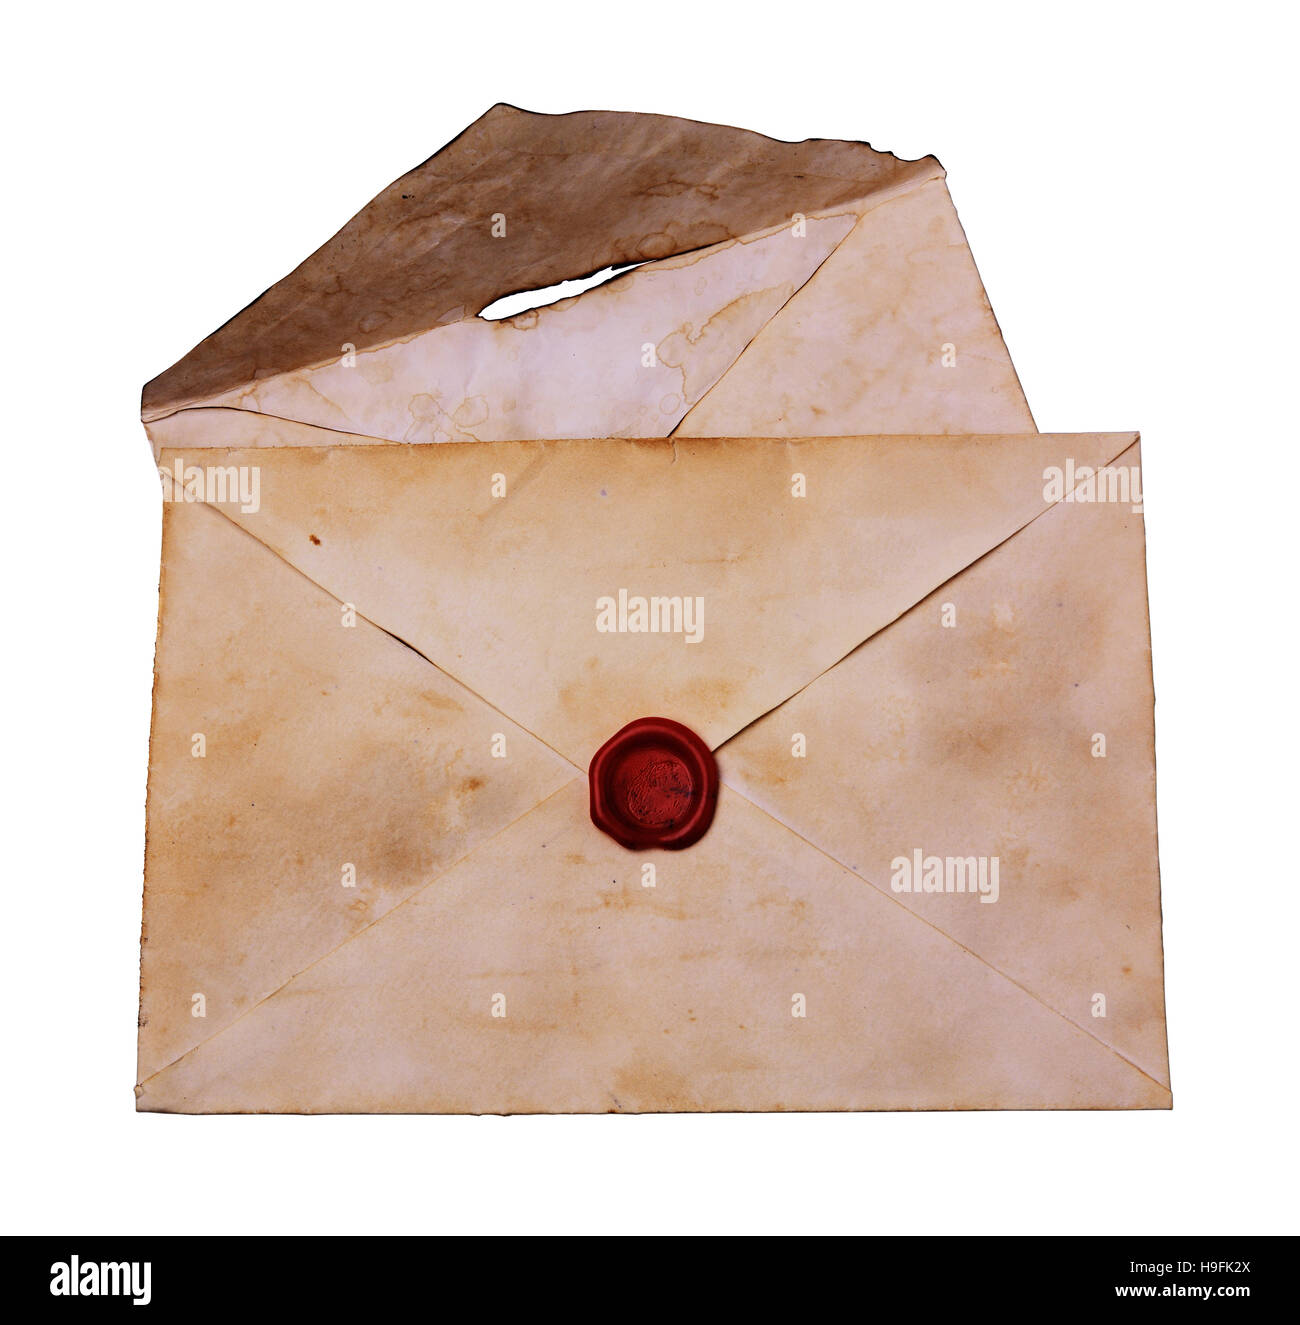 Deux vieux enveloppe avec cachet de cire rouge isolated on white Banque D'Images